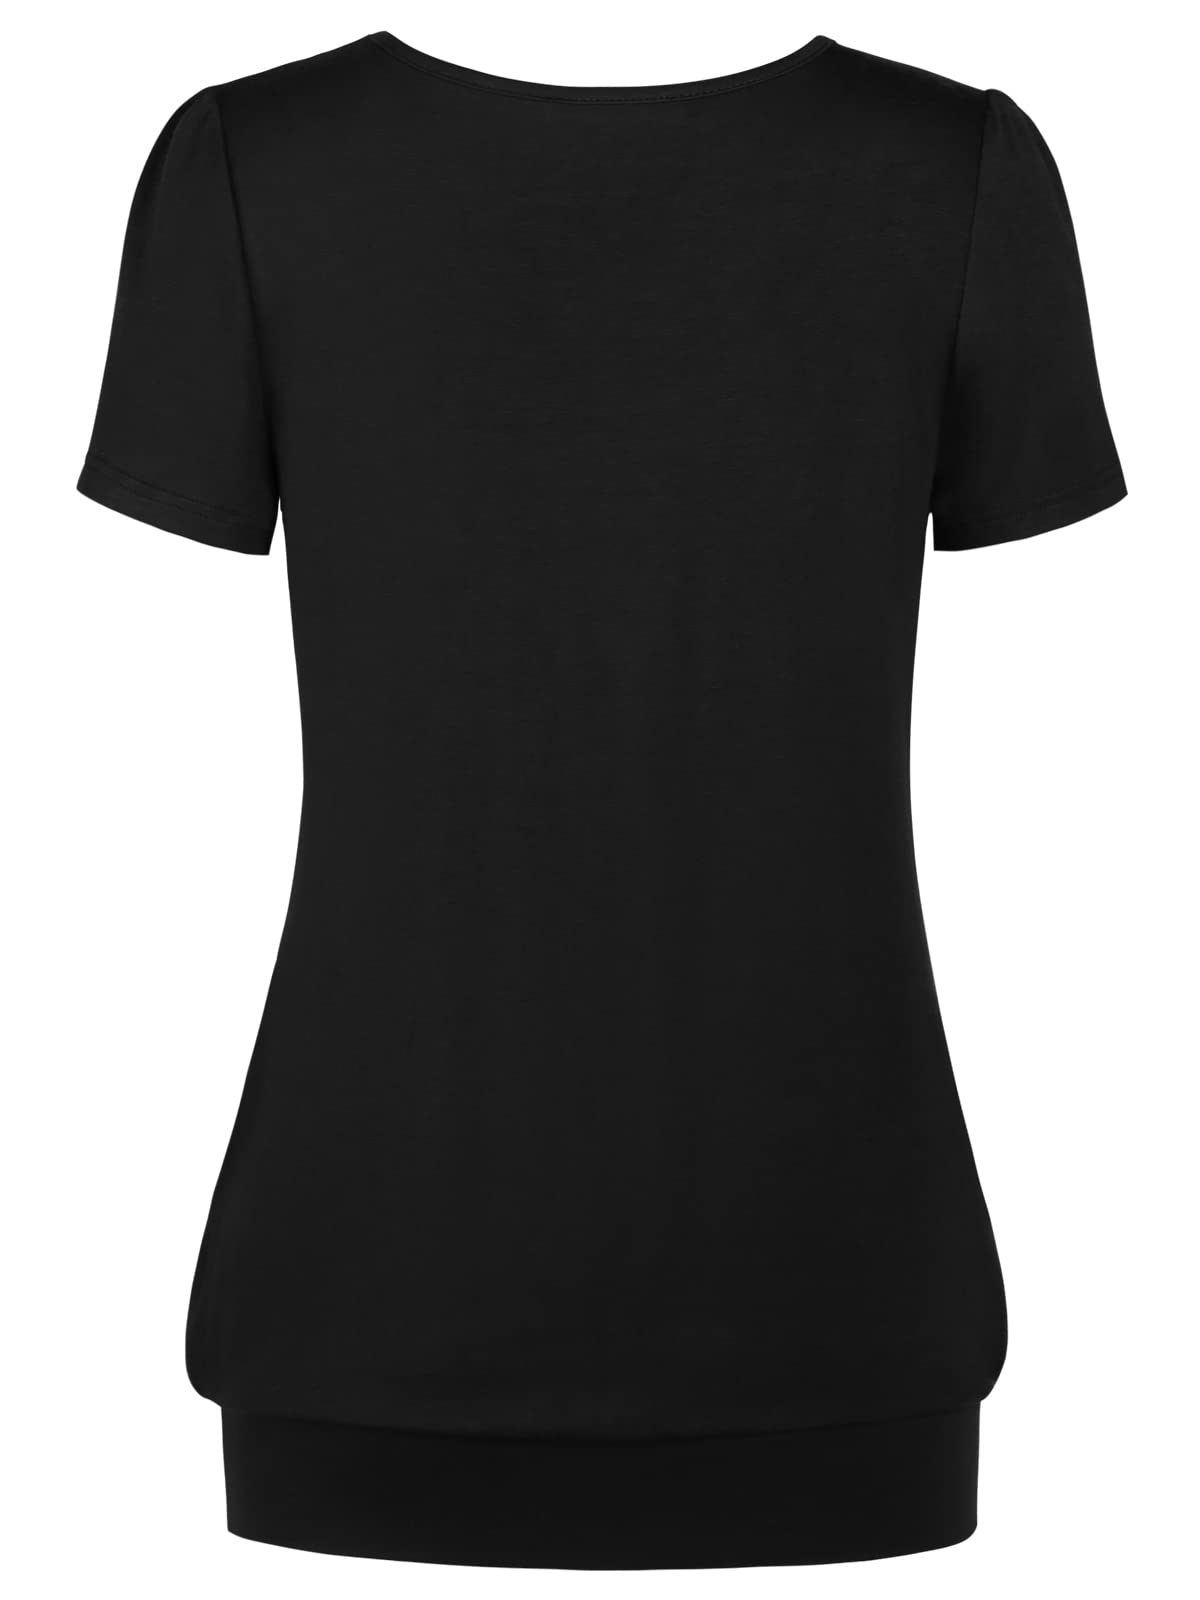 Women's Shirts & Tops - Scoop Neck, Black